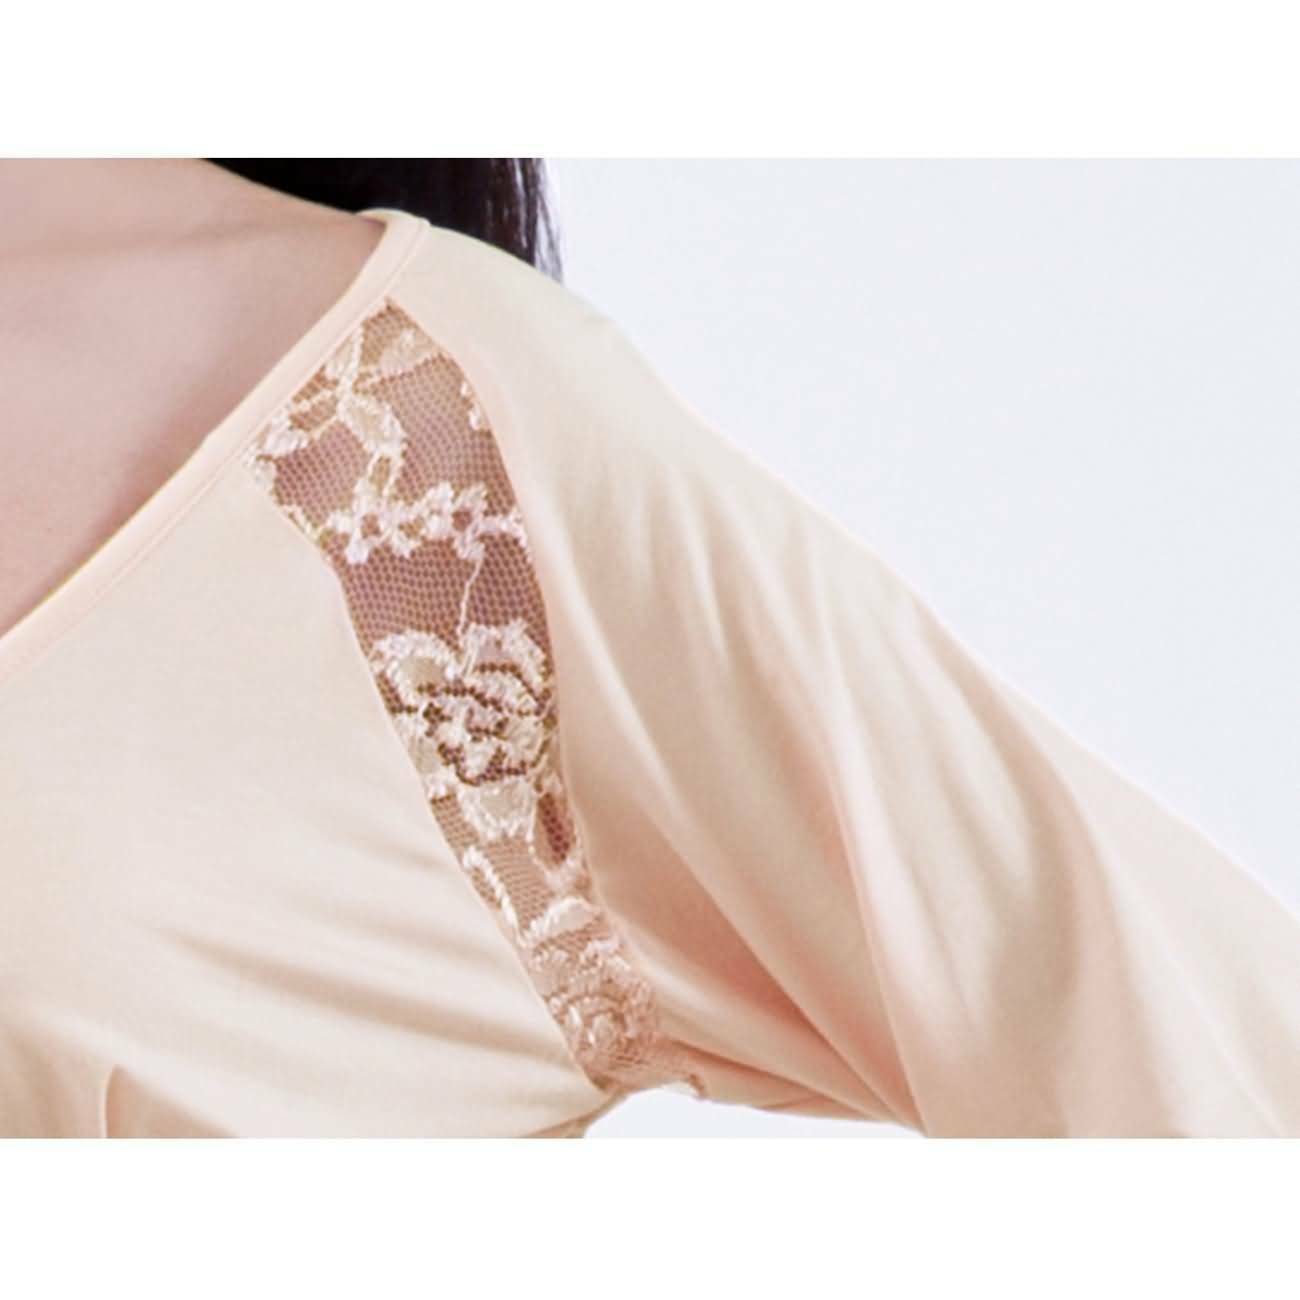 RAIKOU Damen Freizeit Kleid Sommerkleid Casual Strandkleid Minikleid mit schönen Details (Dawn,36/38)